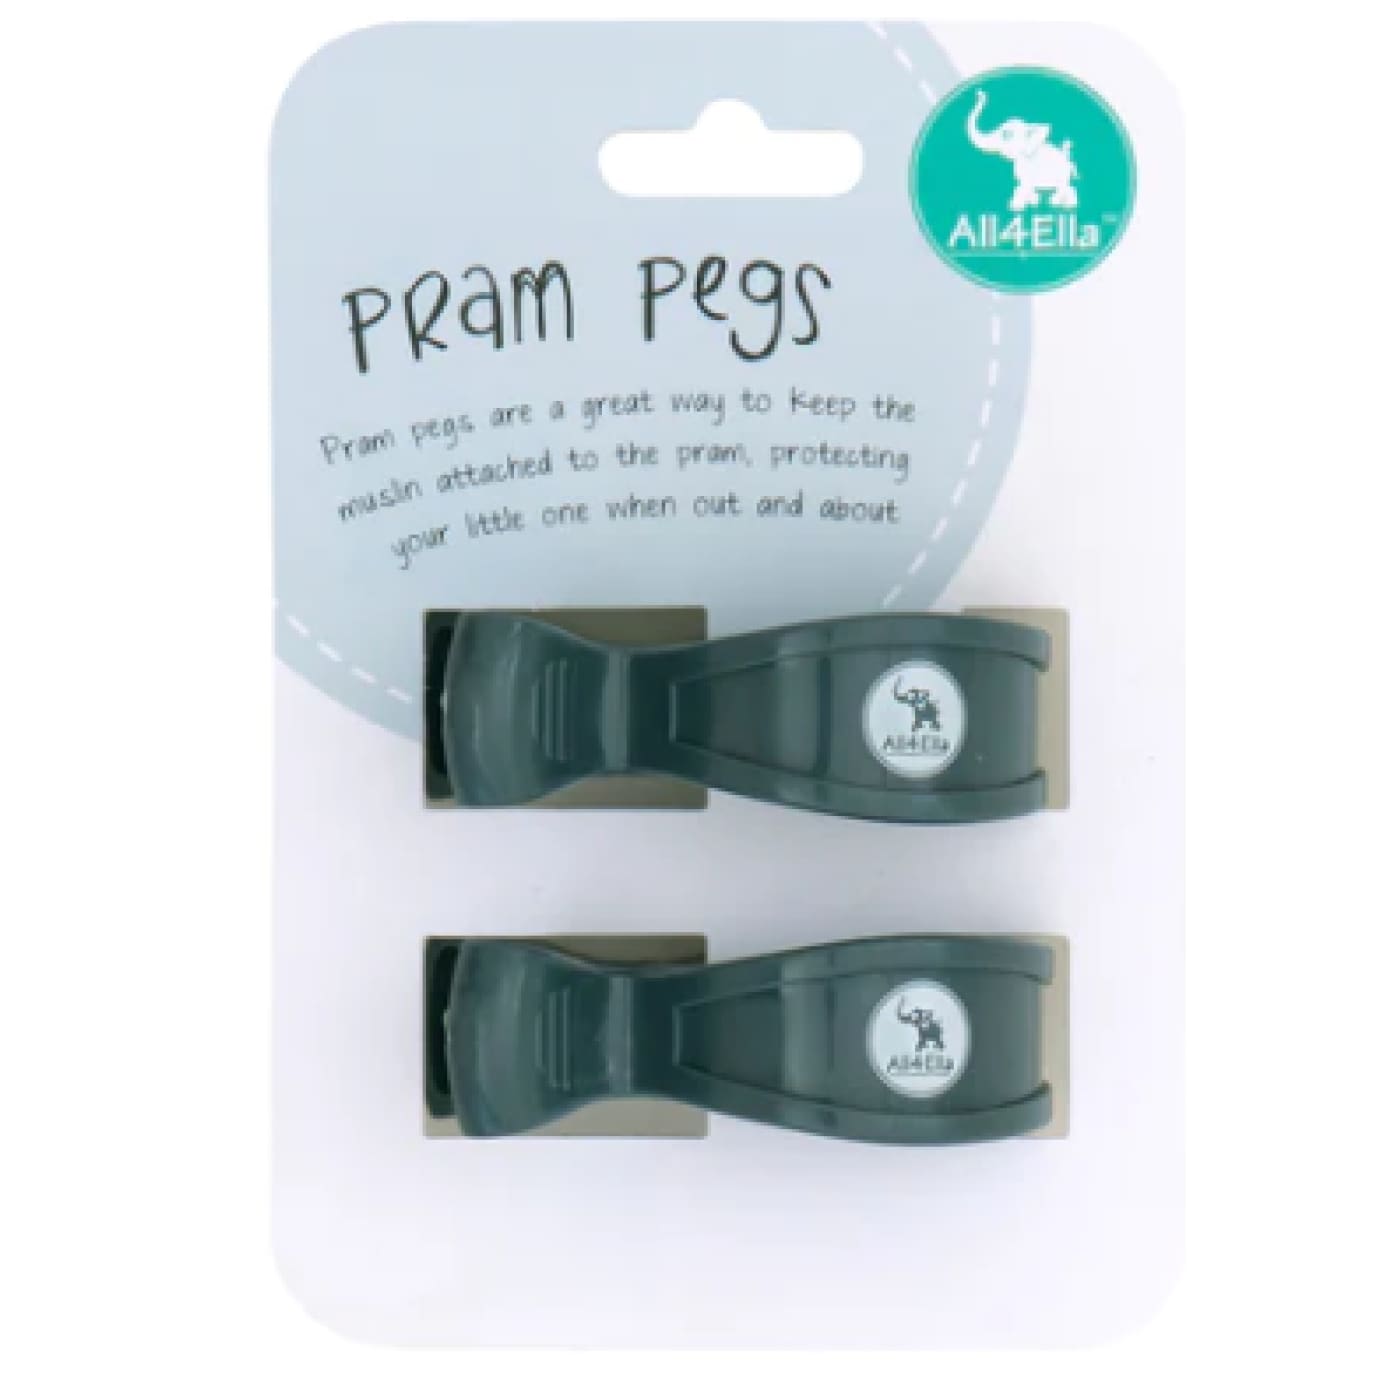 All4Ella Pram Pegs 2 Pack - Charcoal - Charcoal - PRAMS & STROLLERS - PRAM HOOKS/PEGS